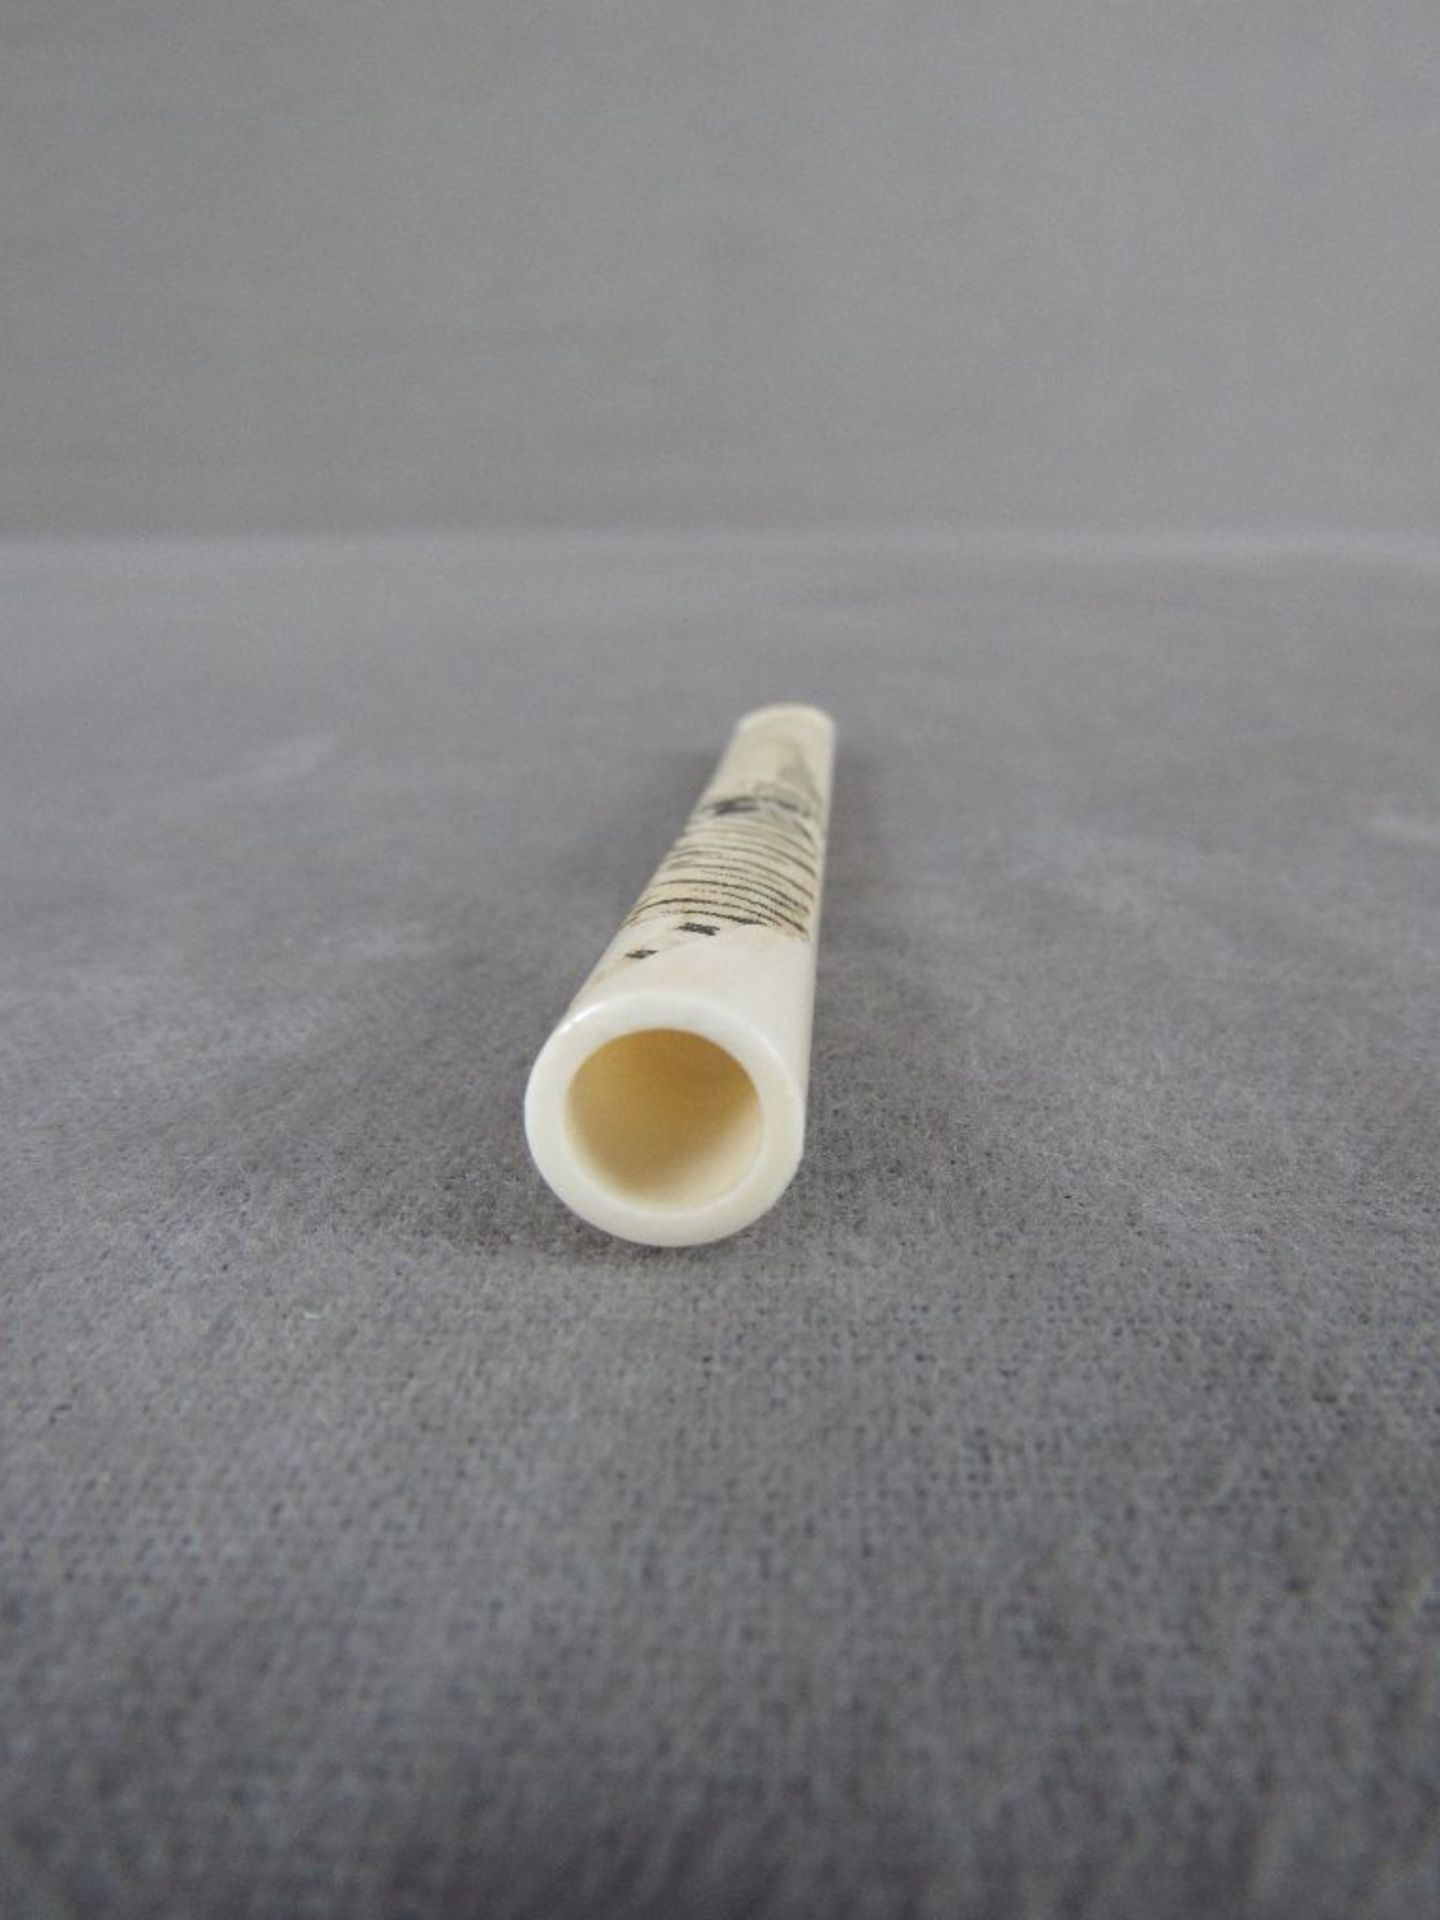 Zigarettenspitze Bein asiatisch 10cm lang - Image 2 of 3